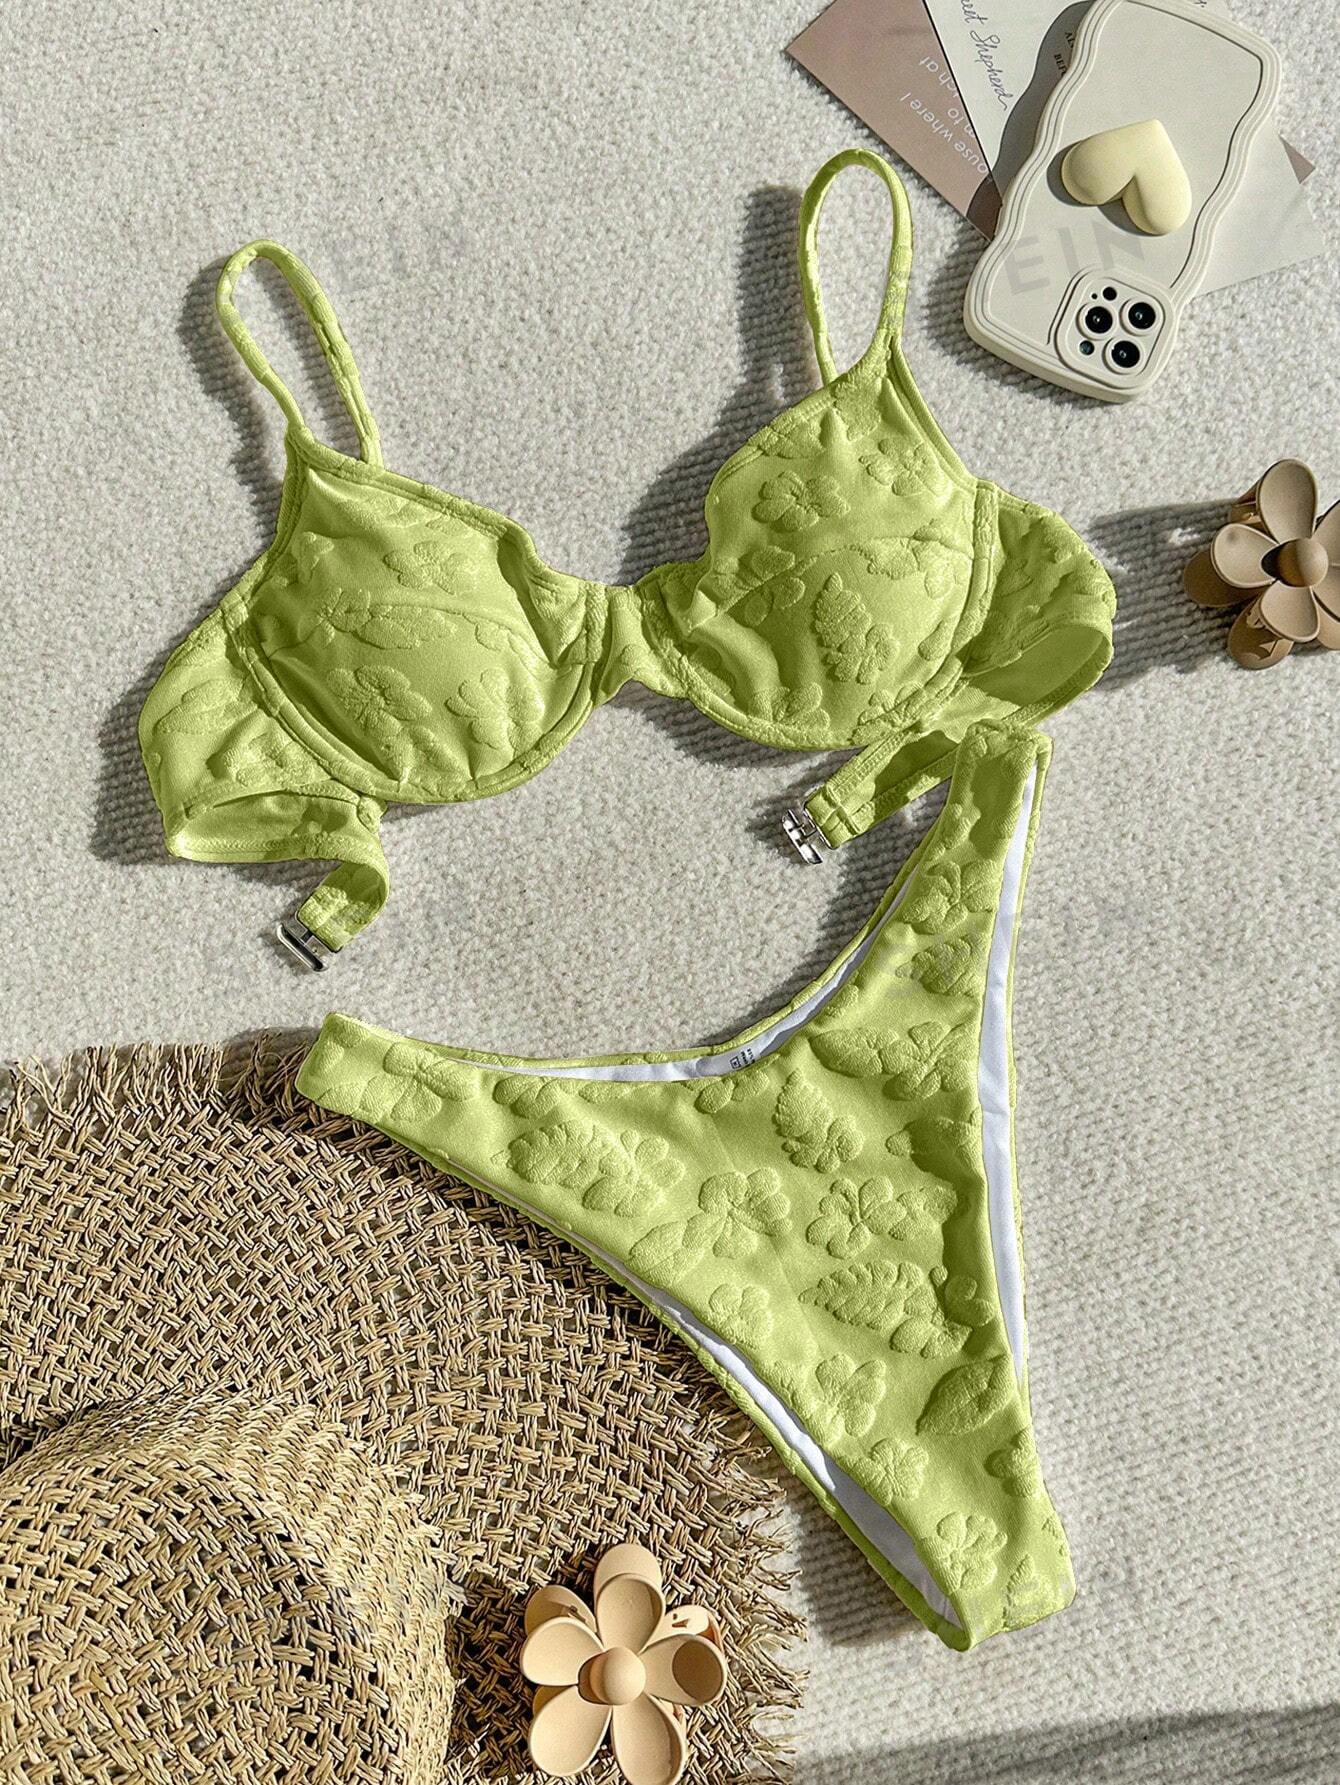 Женский однотонный жаккардовый купальник, оливково-зеленый женский купальник бикини треугольный купальный костюм пляжная одежда